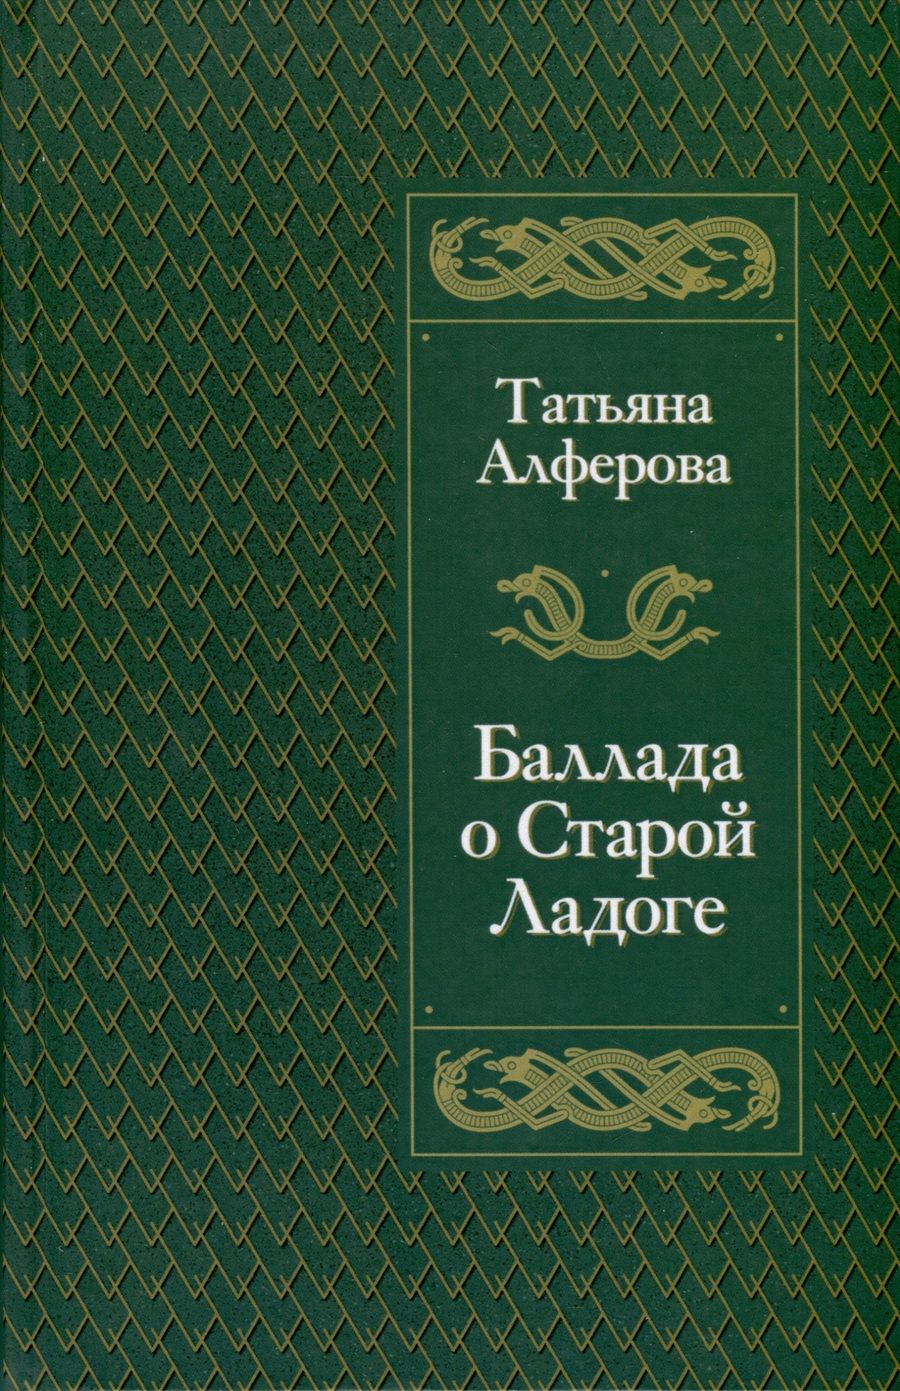 Обложка книги "Алферова: Баллада о Старой Ладоге"